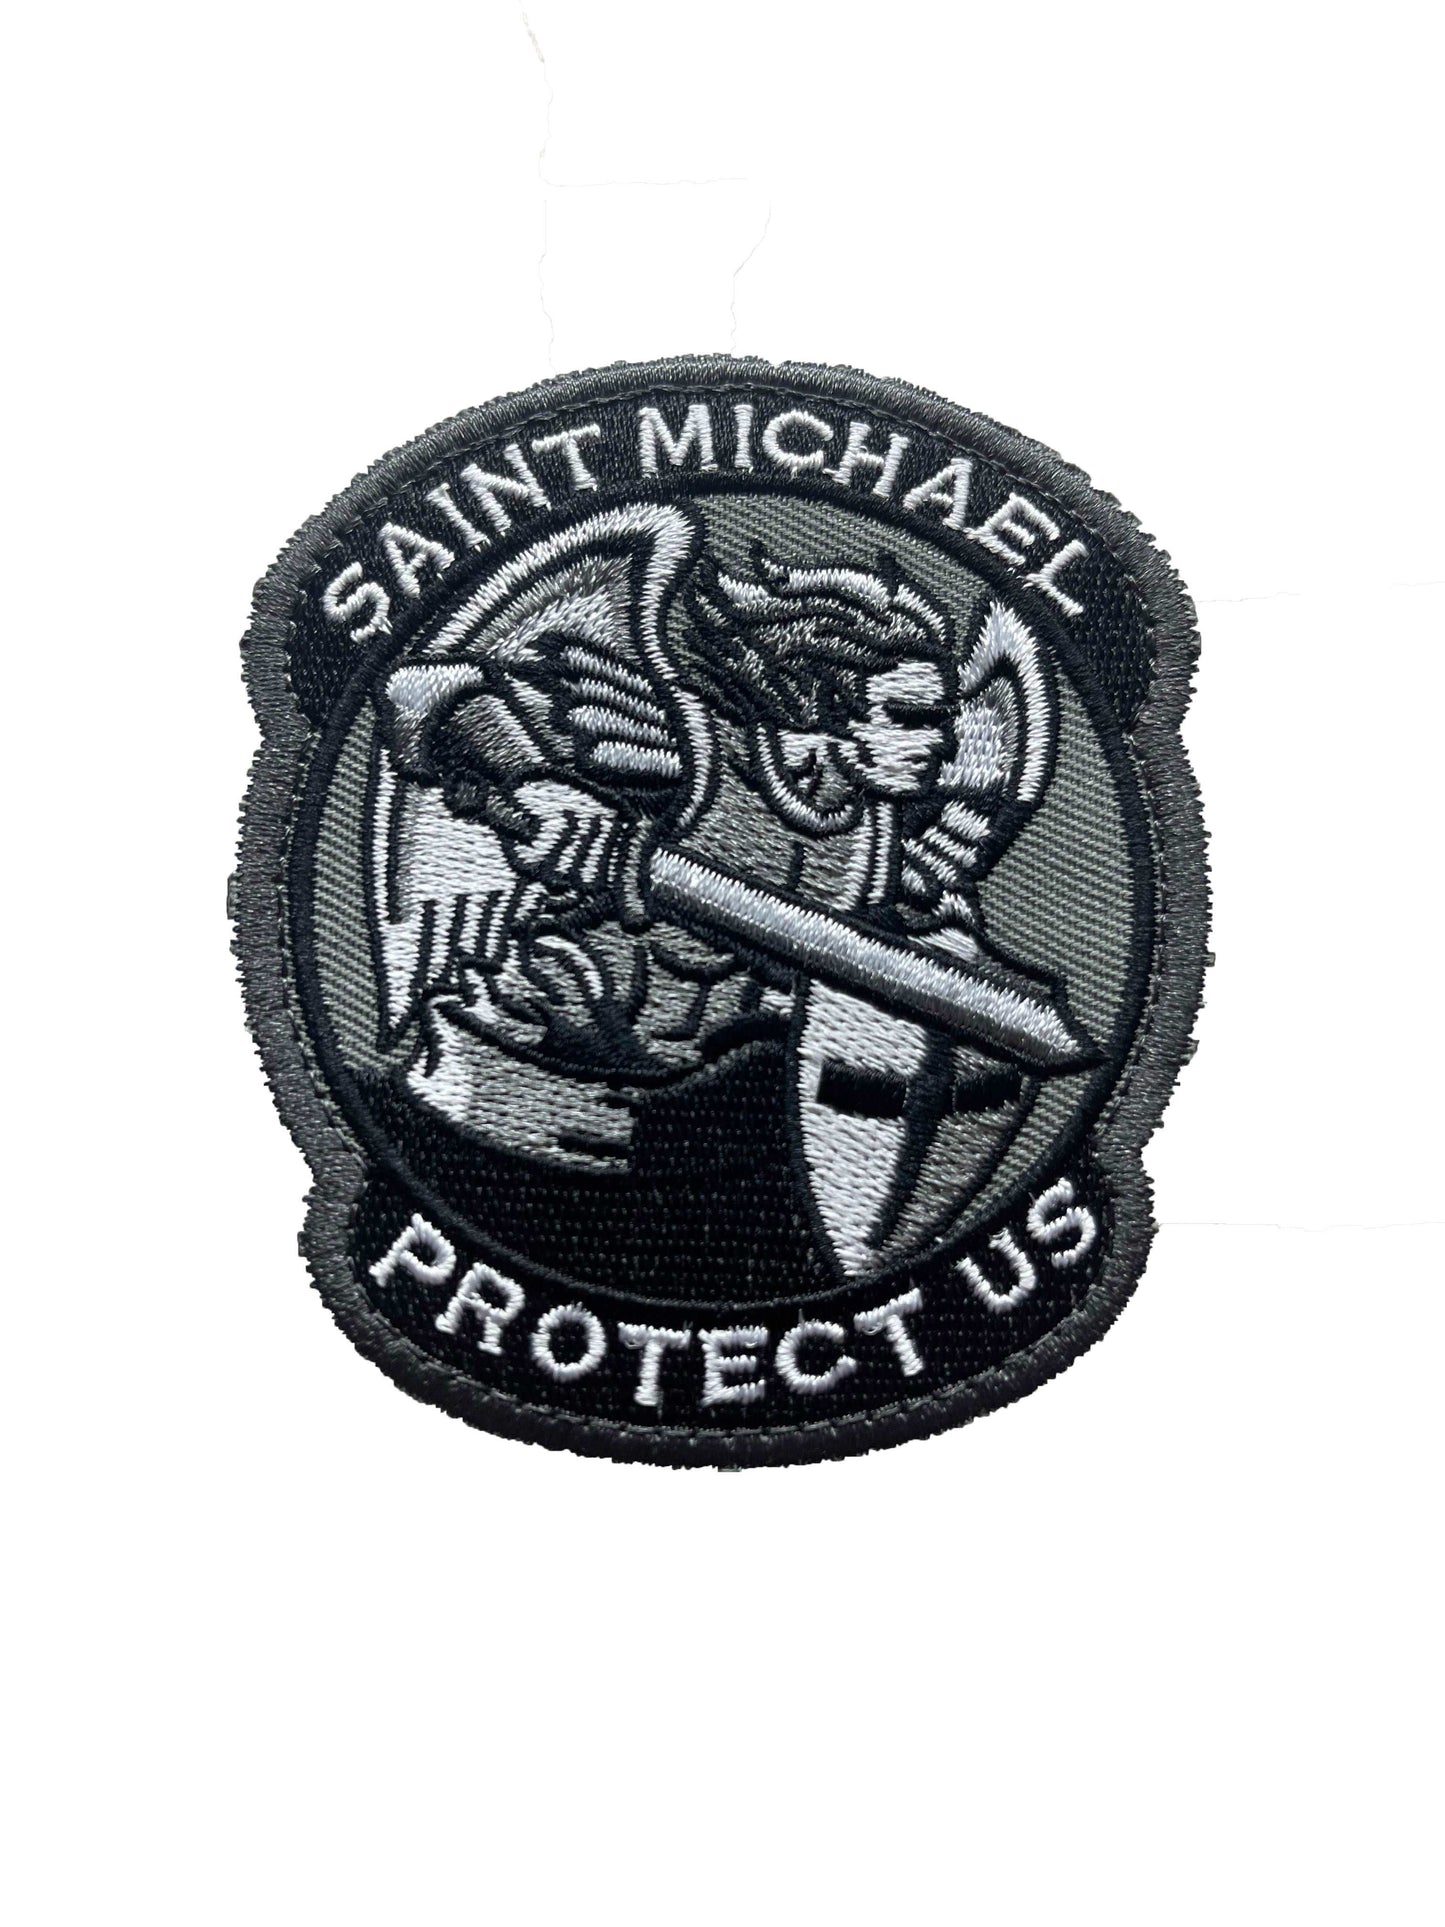 Saint Michael Protect Us Patch